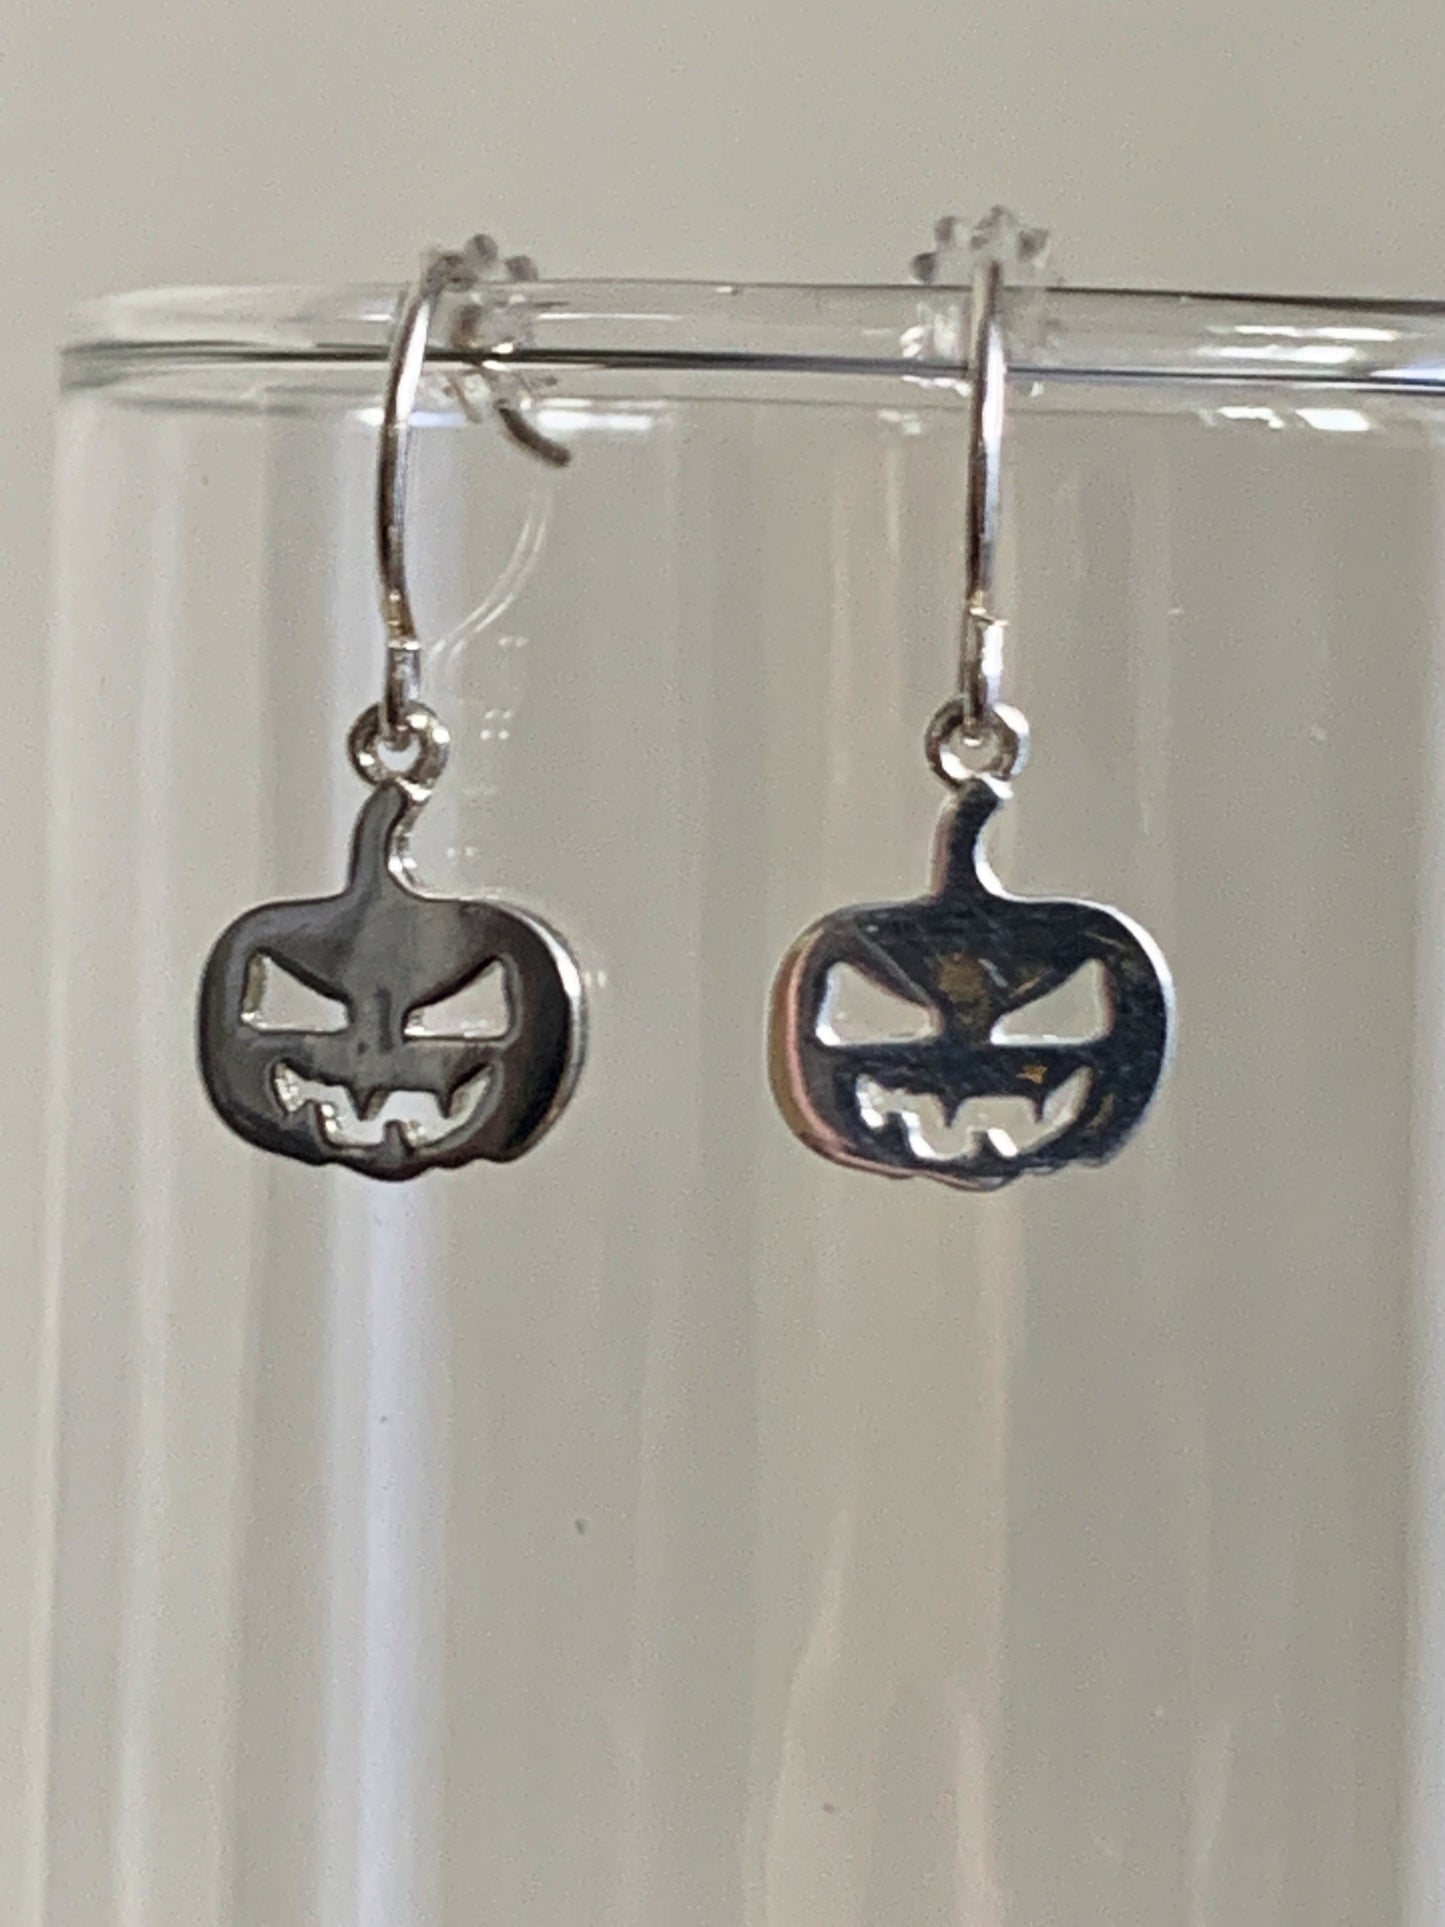 Halloween Earrings Sterling Silver Jack o Lantern Earrings 925 Earrings Gifts For Her